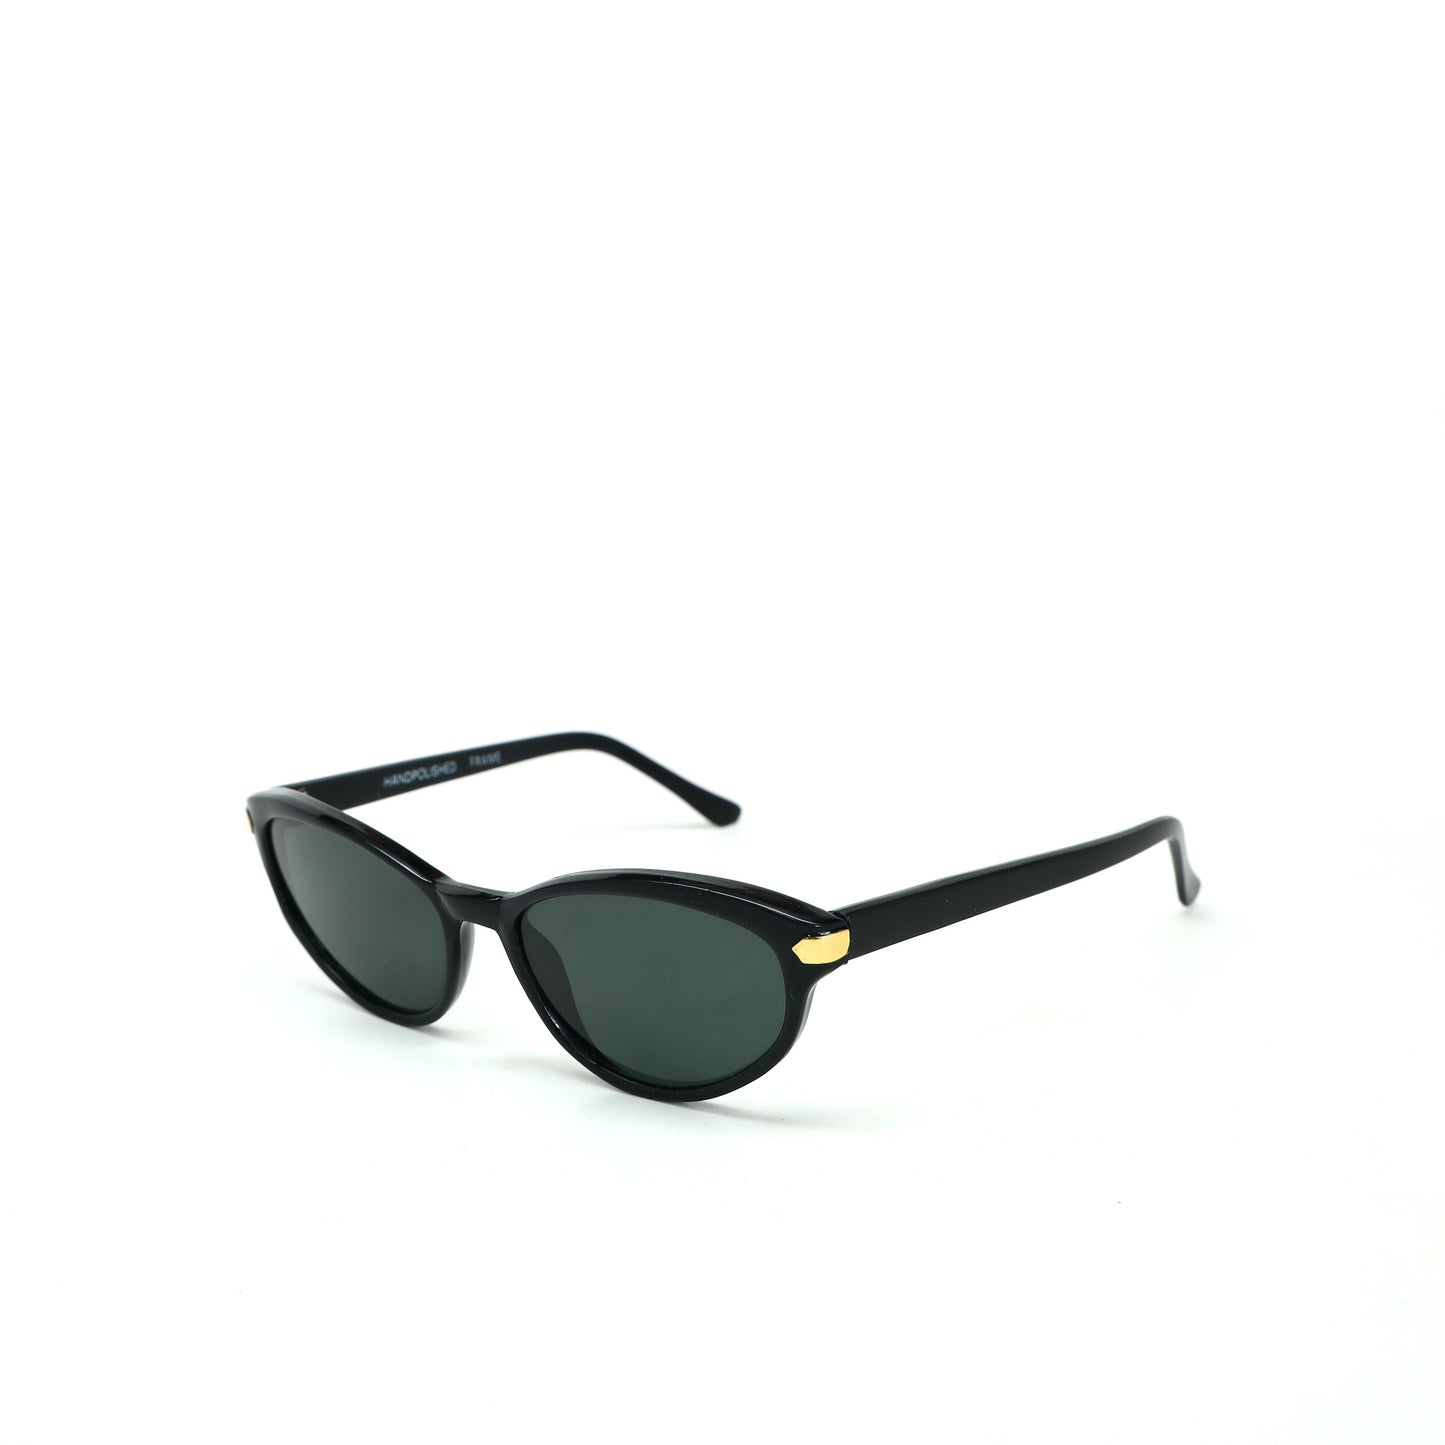 Vintage Standard Size Original Melrose Oval Sunglasses - Black